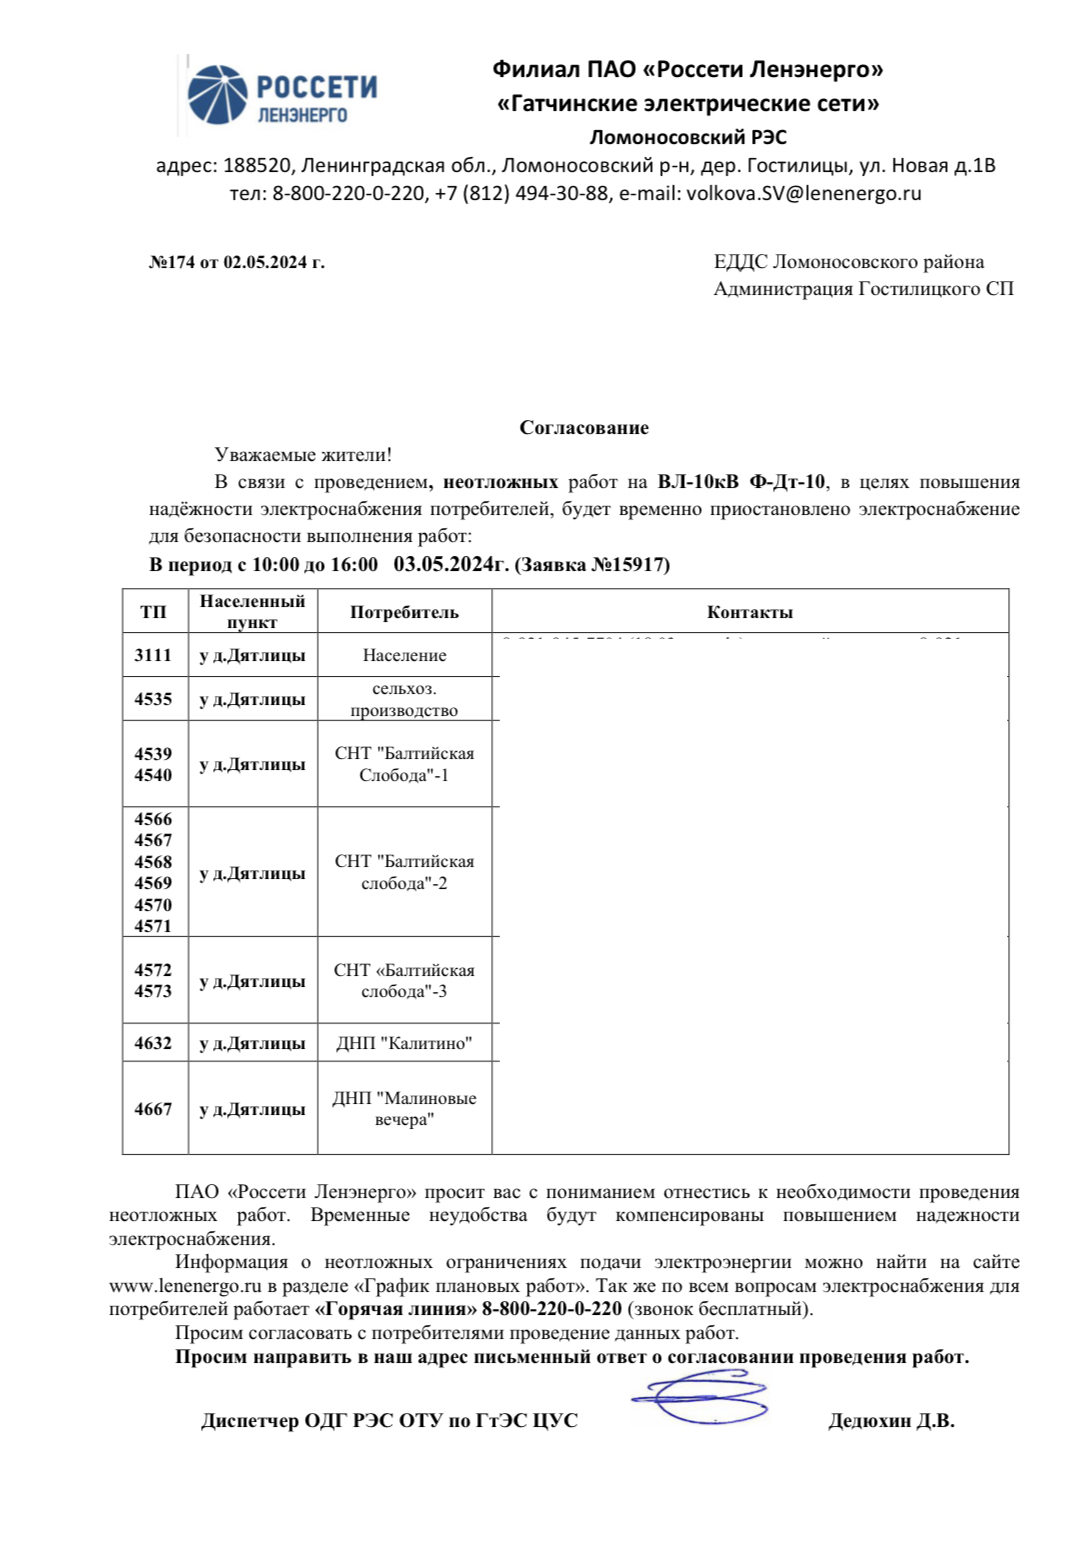 Уведомление о проведении плановых работ на ПС "Дятлицы" №174 от 02.05.2024 г.